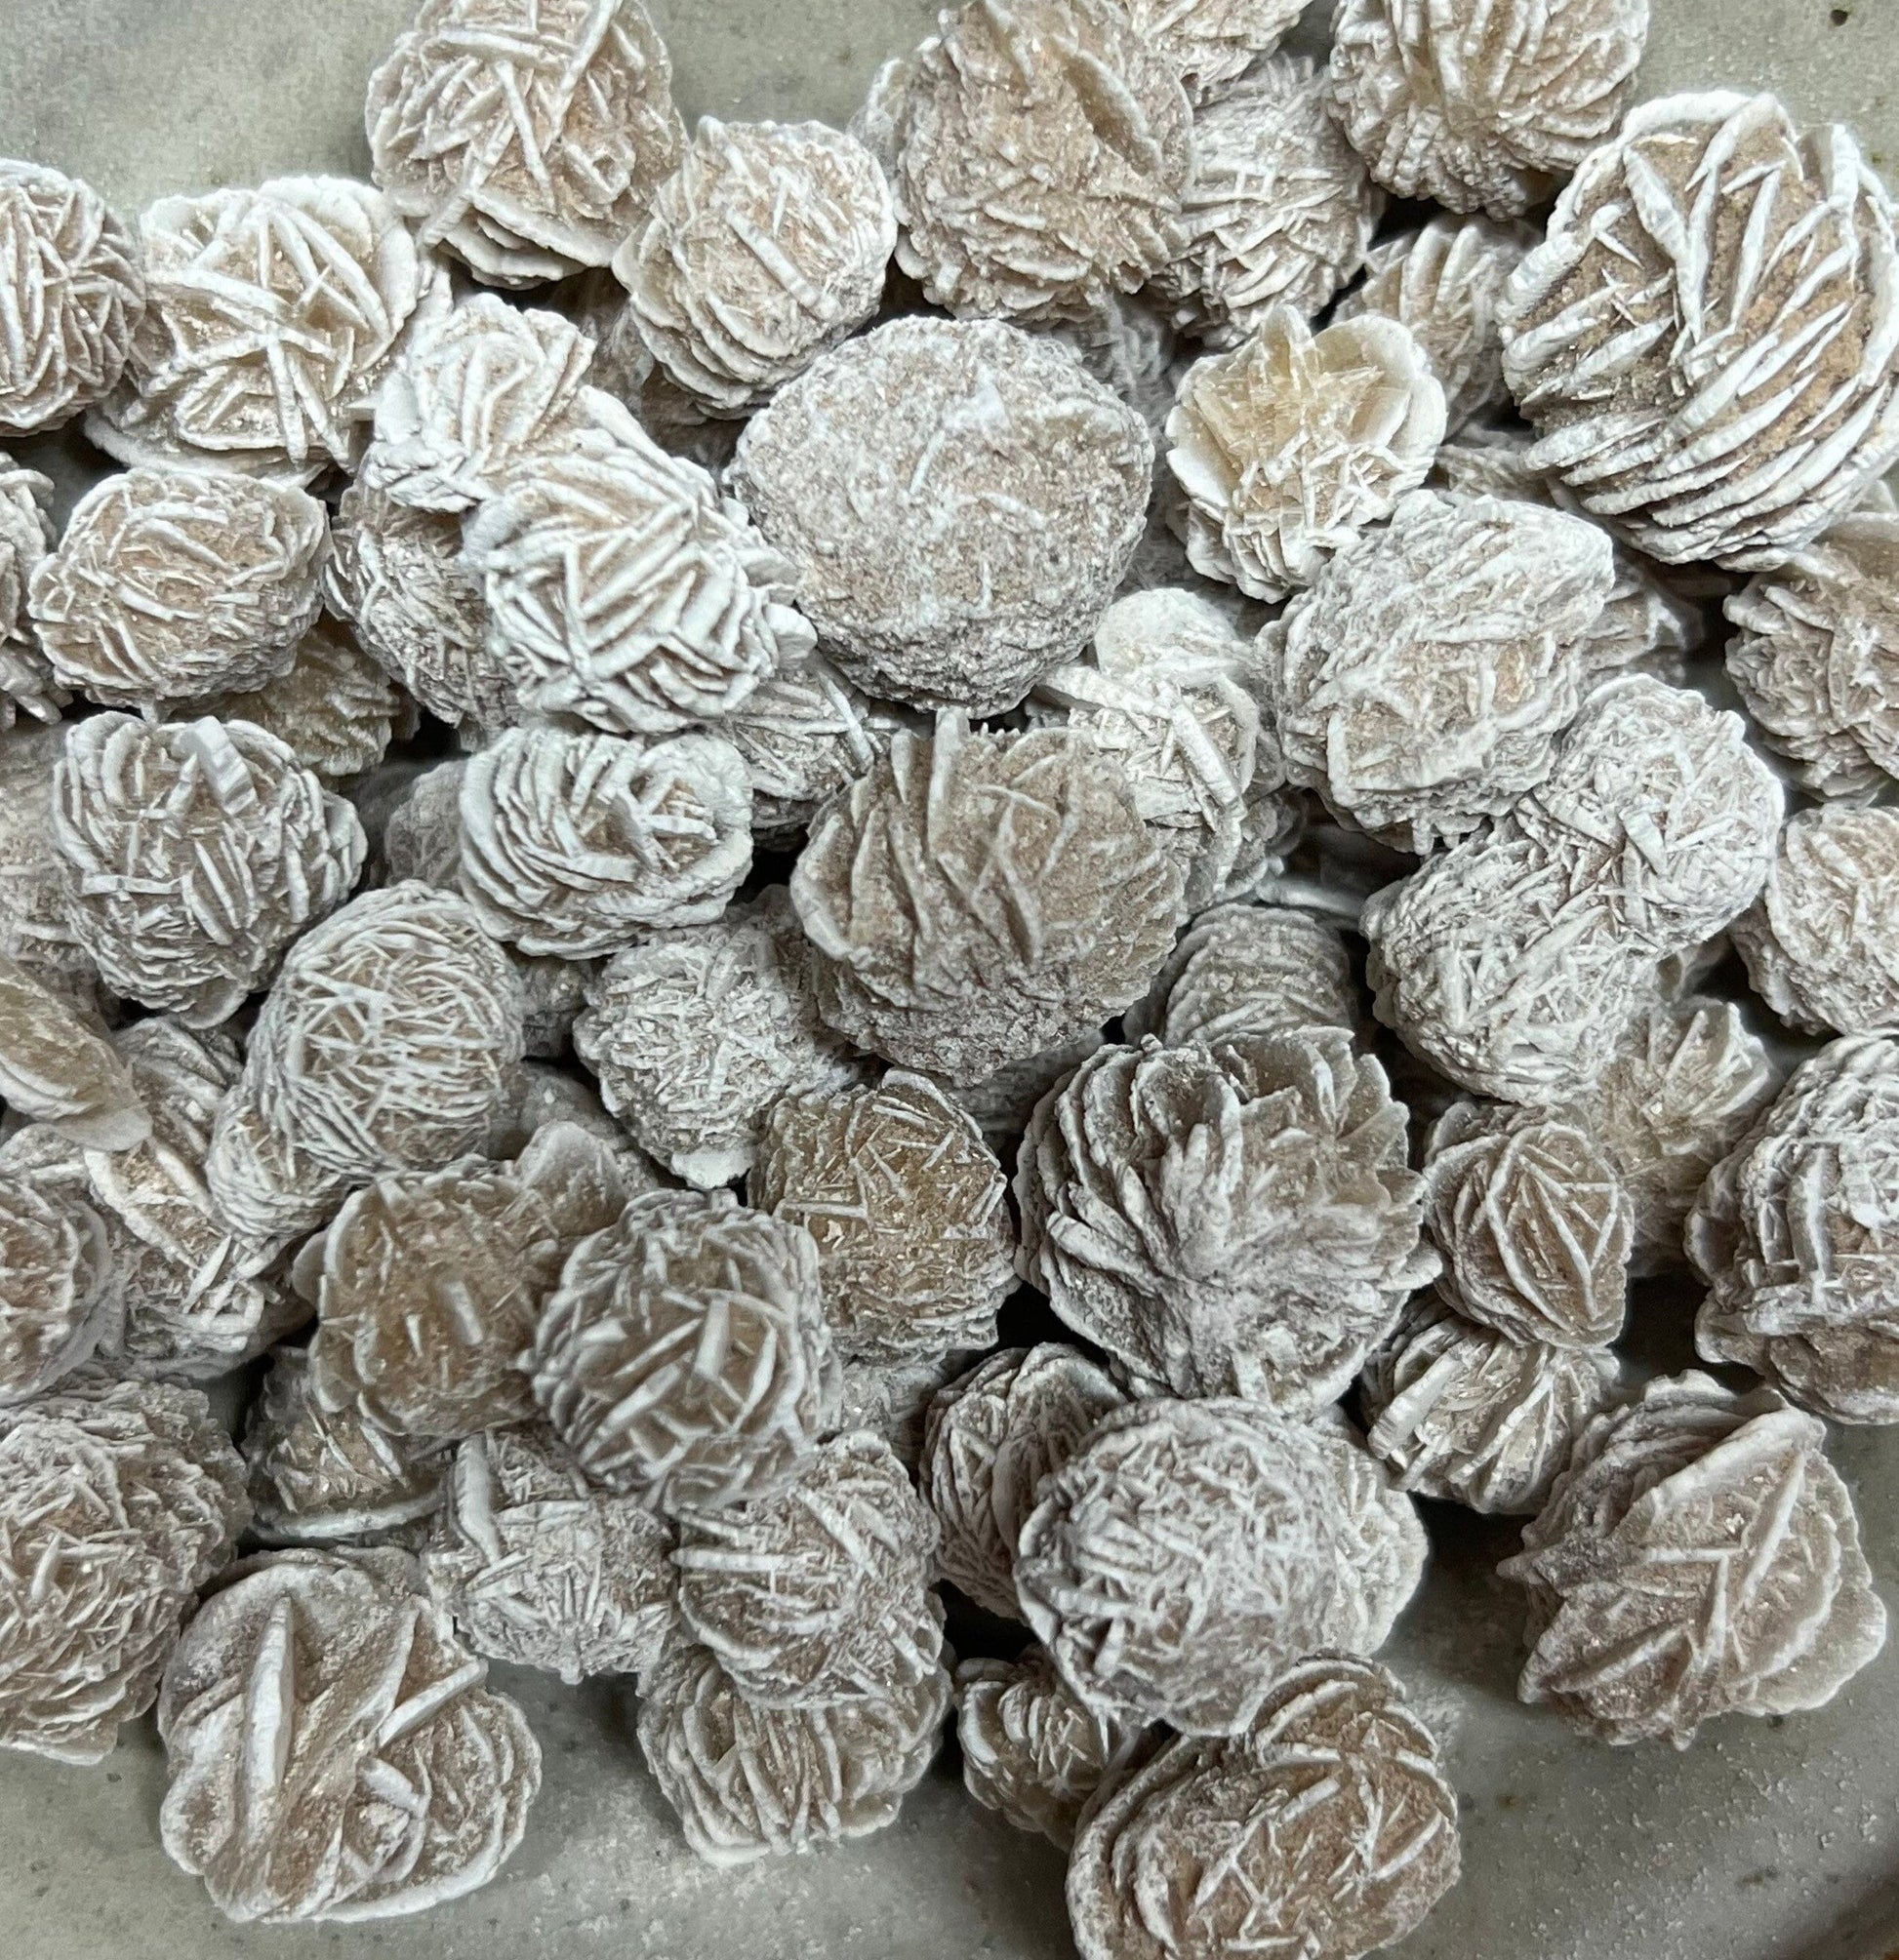 Mini Desert Rose | Selenite Crystal | Gypsum